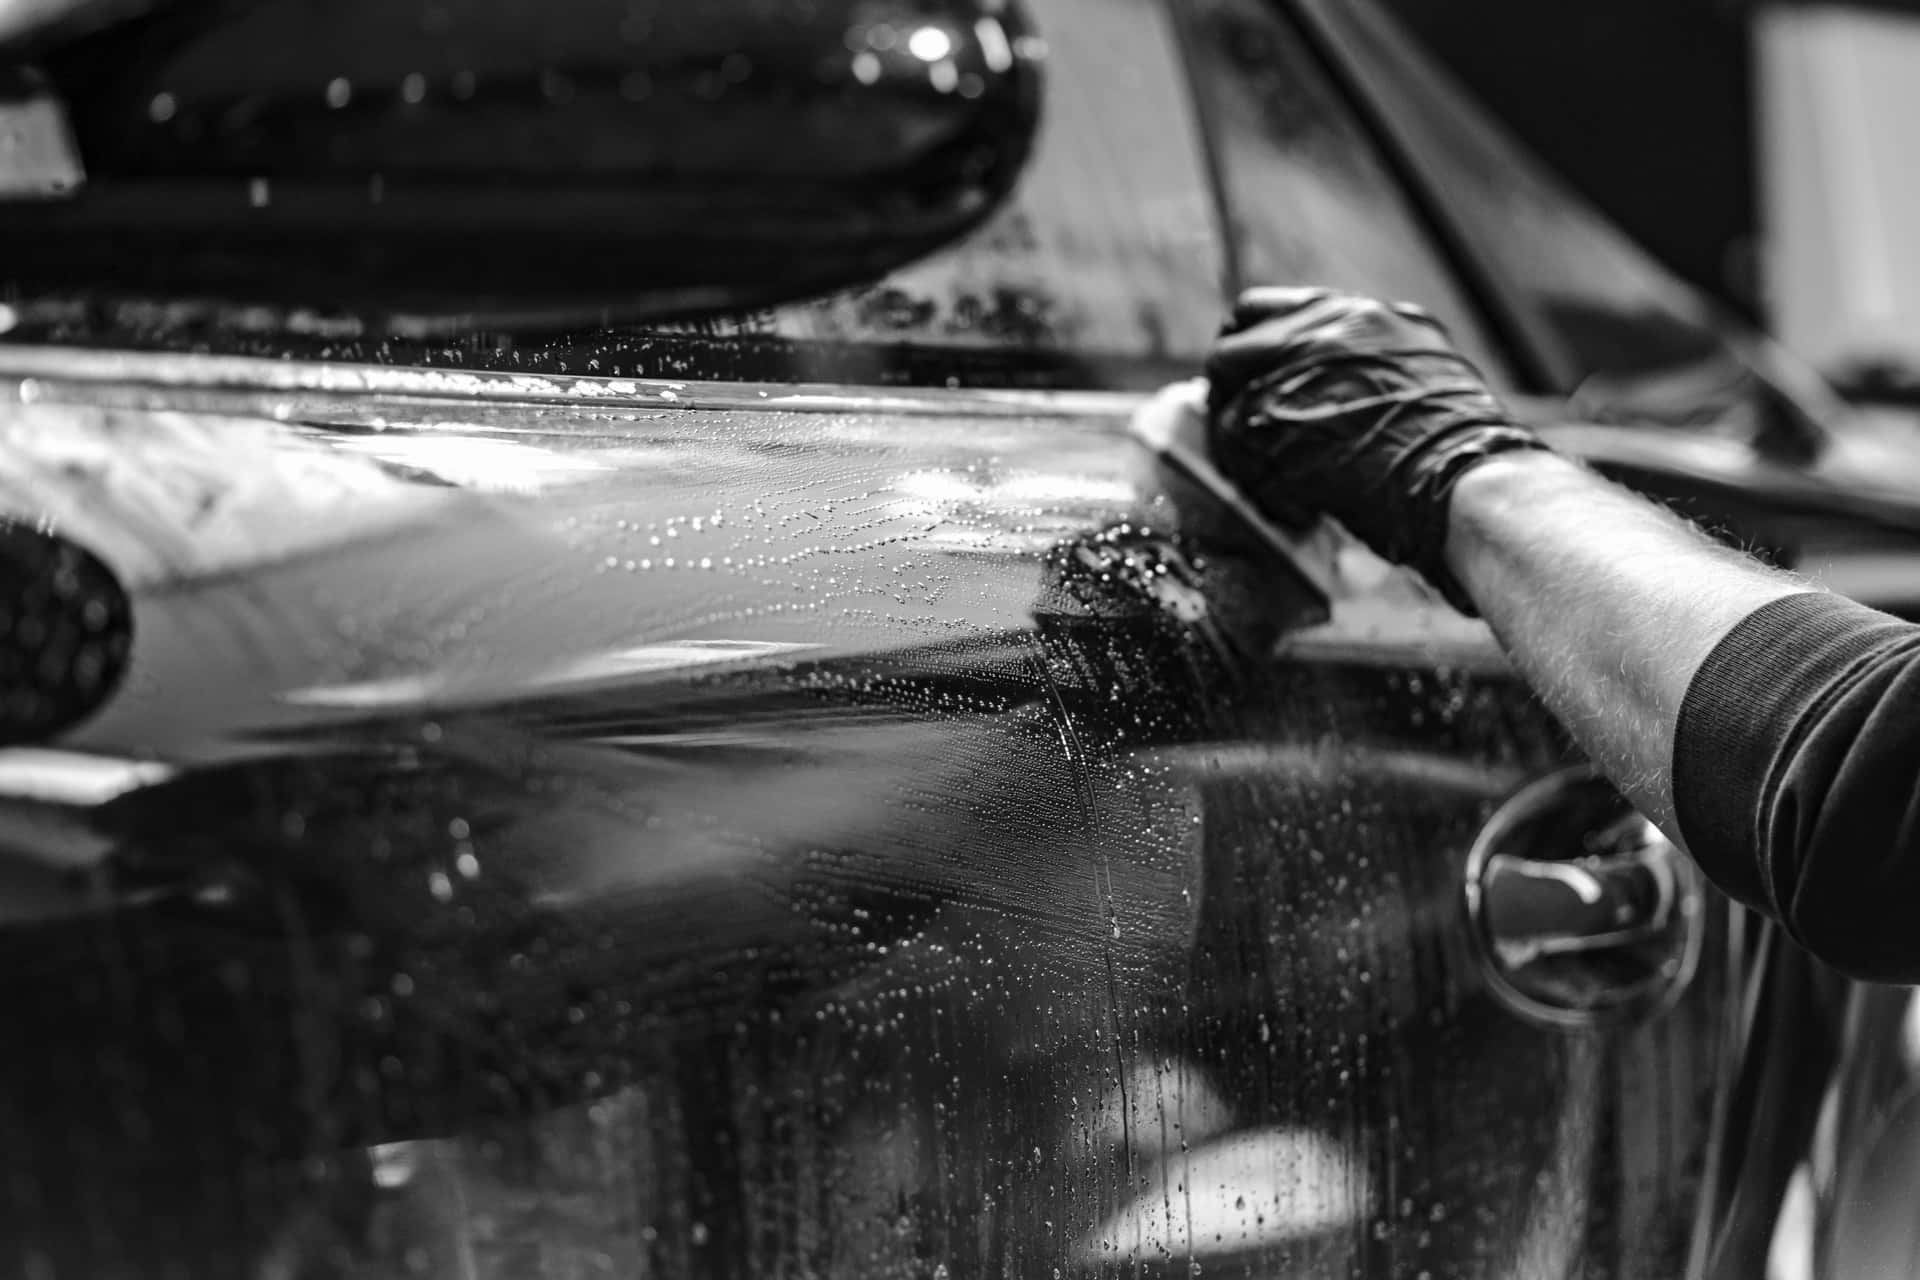 Mettile Tue Ruote In Perfetta Forma E Ottieni Quell'effetto Scintillante Del Lavaggio Auto Dal Car Wash Oggi Stesso!